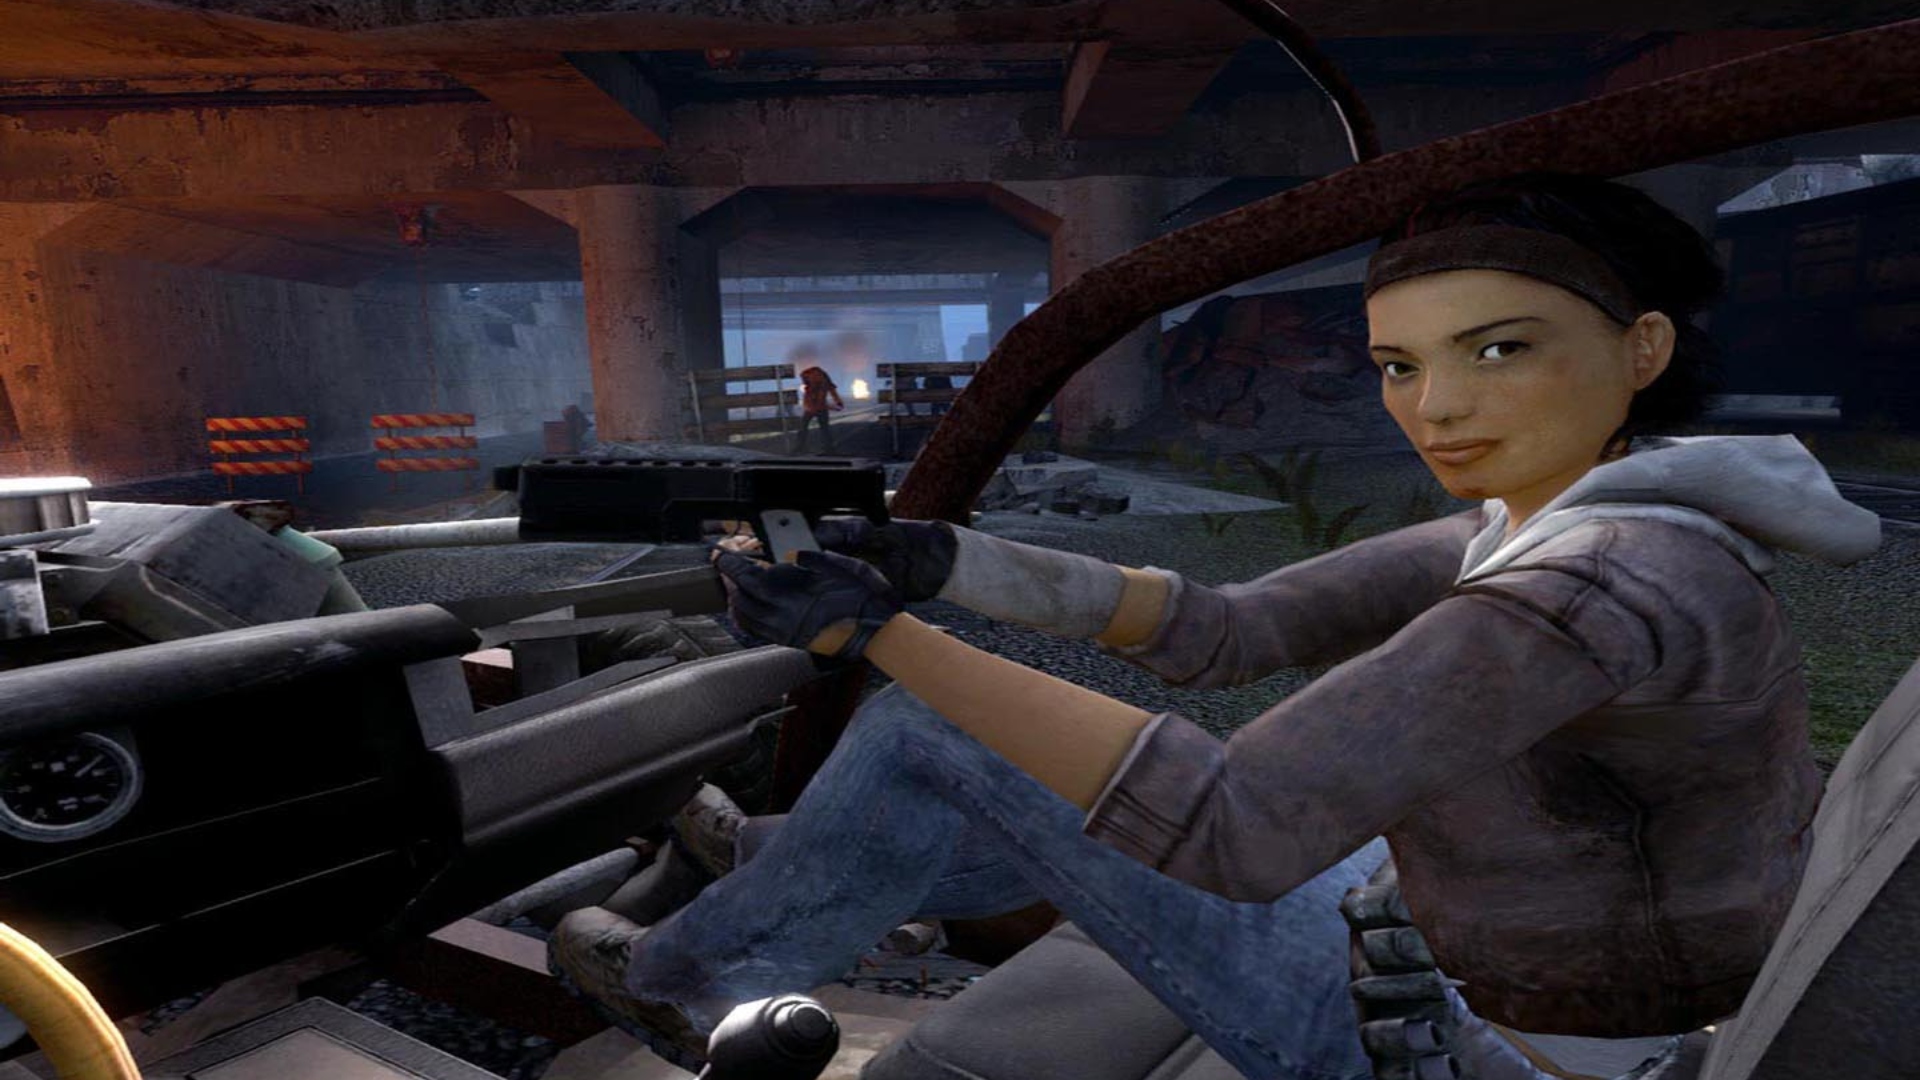 นวนิยายครึ่งชีวิต: หญิงสาว, Alyx Vance, นั่งอยู่ในที่นั่งผู้โดยสารของรถยนต์ในเกมวาล์ว FPS เกมครึ่งชีวิต 2